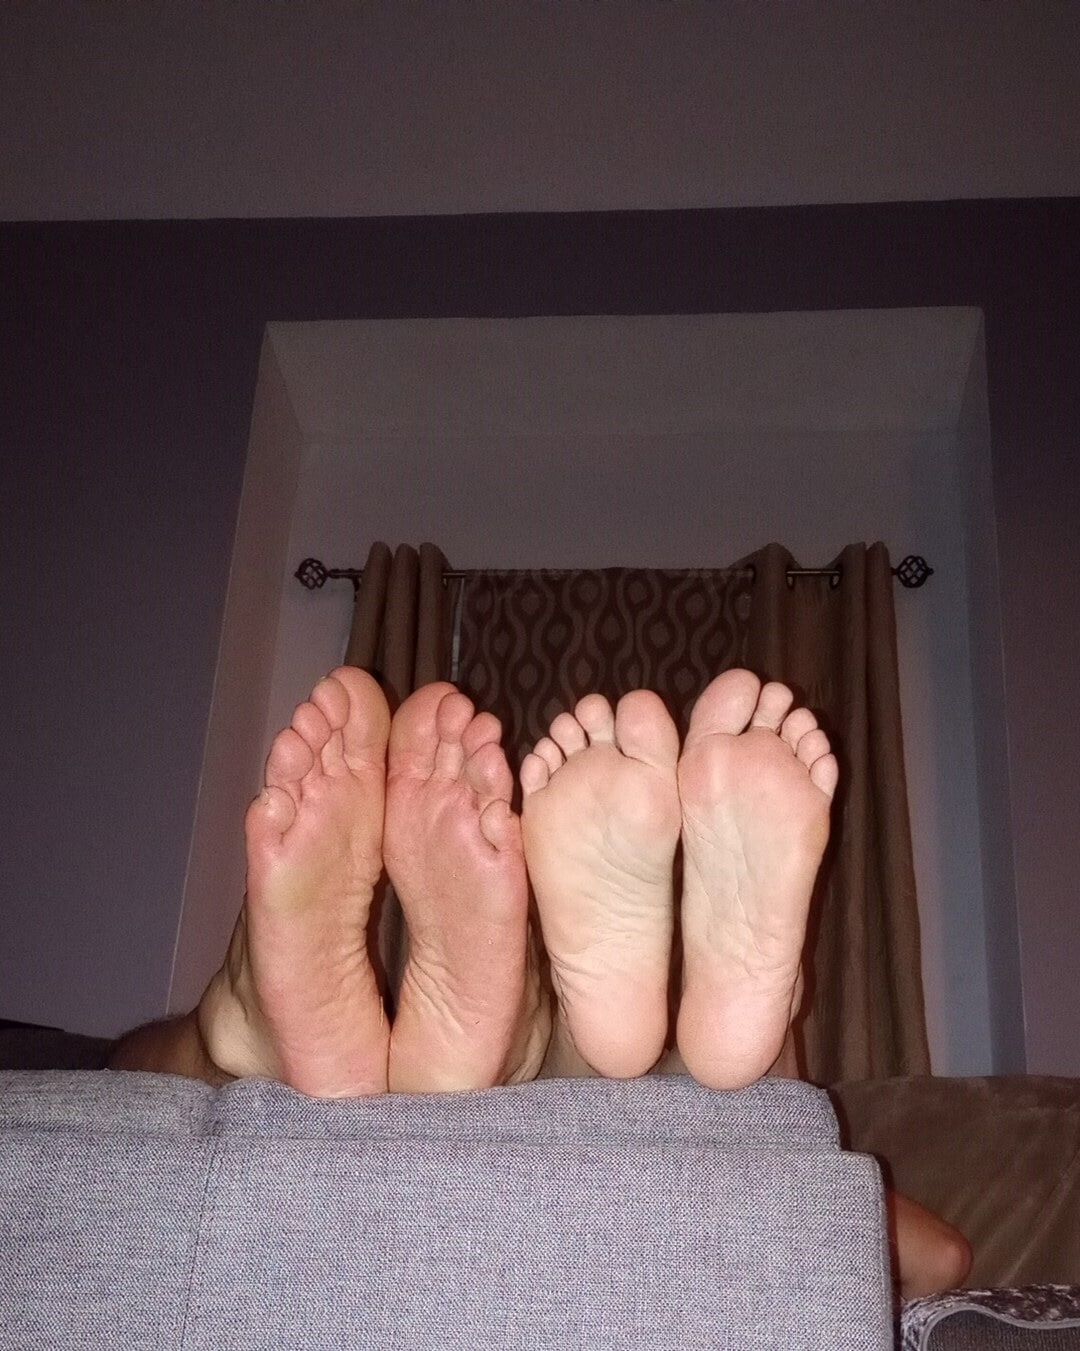 Do you like our feet together